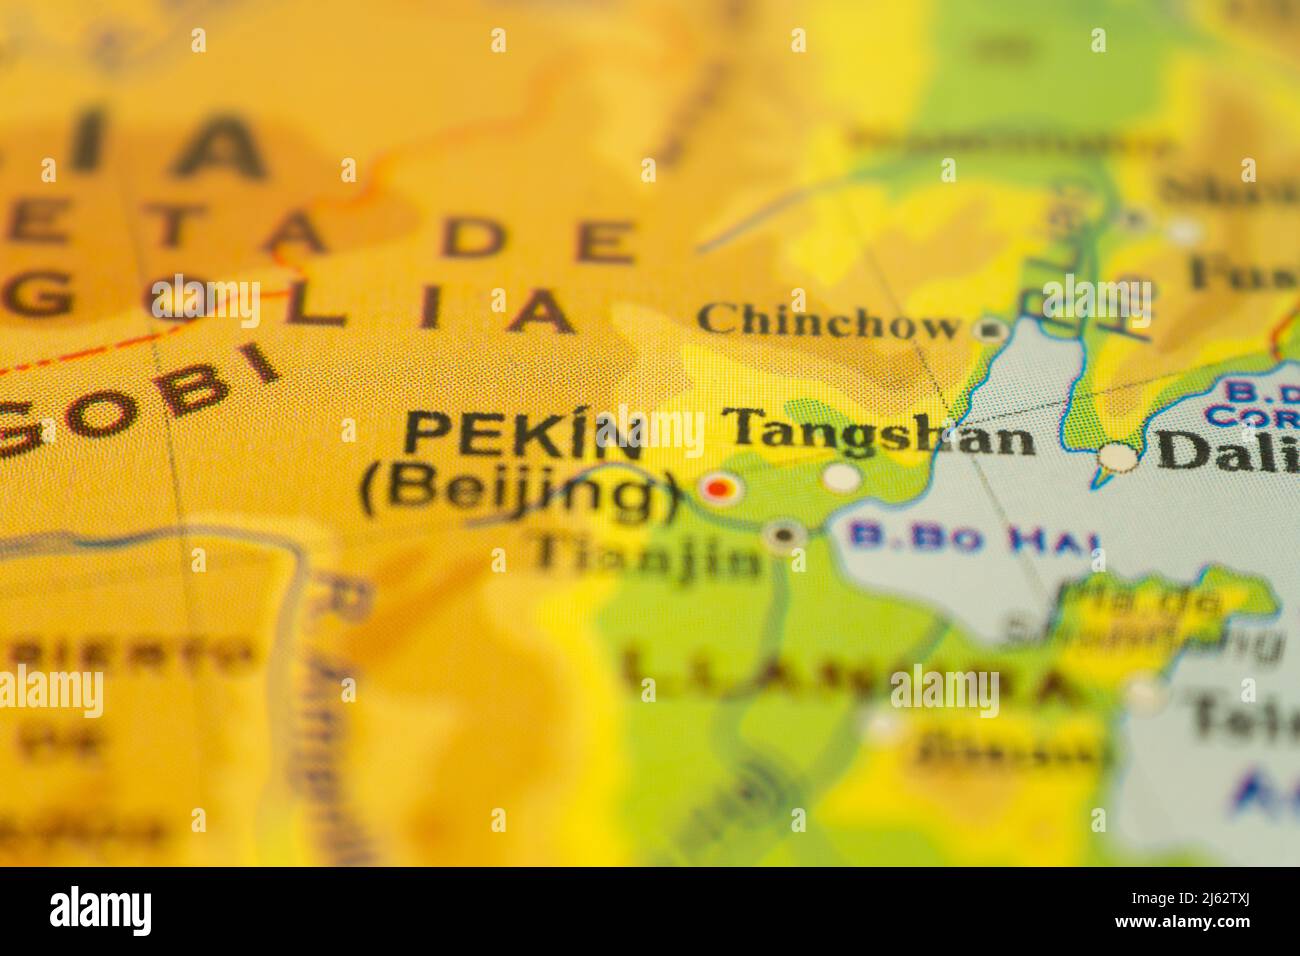 Gros plan de la carte orographique de Pékin et des environs en Chine, avec des références en espagnol. Concept de cartographie, Voyage, tourisme. Différentiel FO Banque D'Images